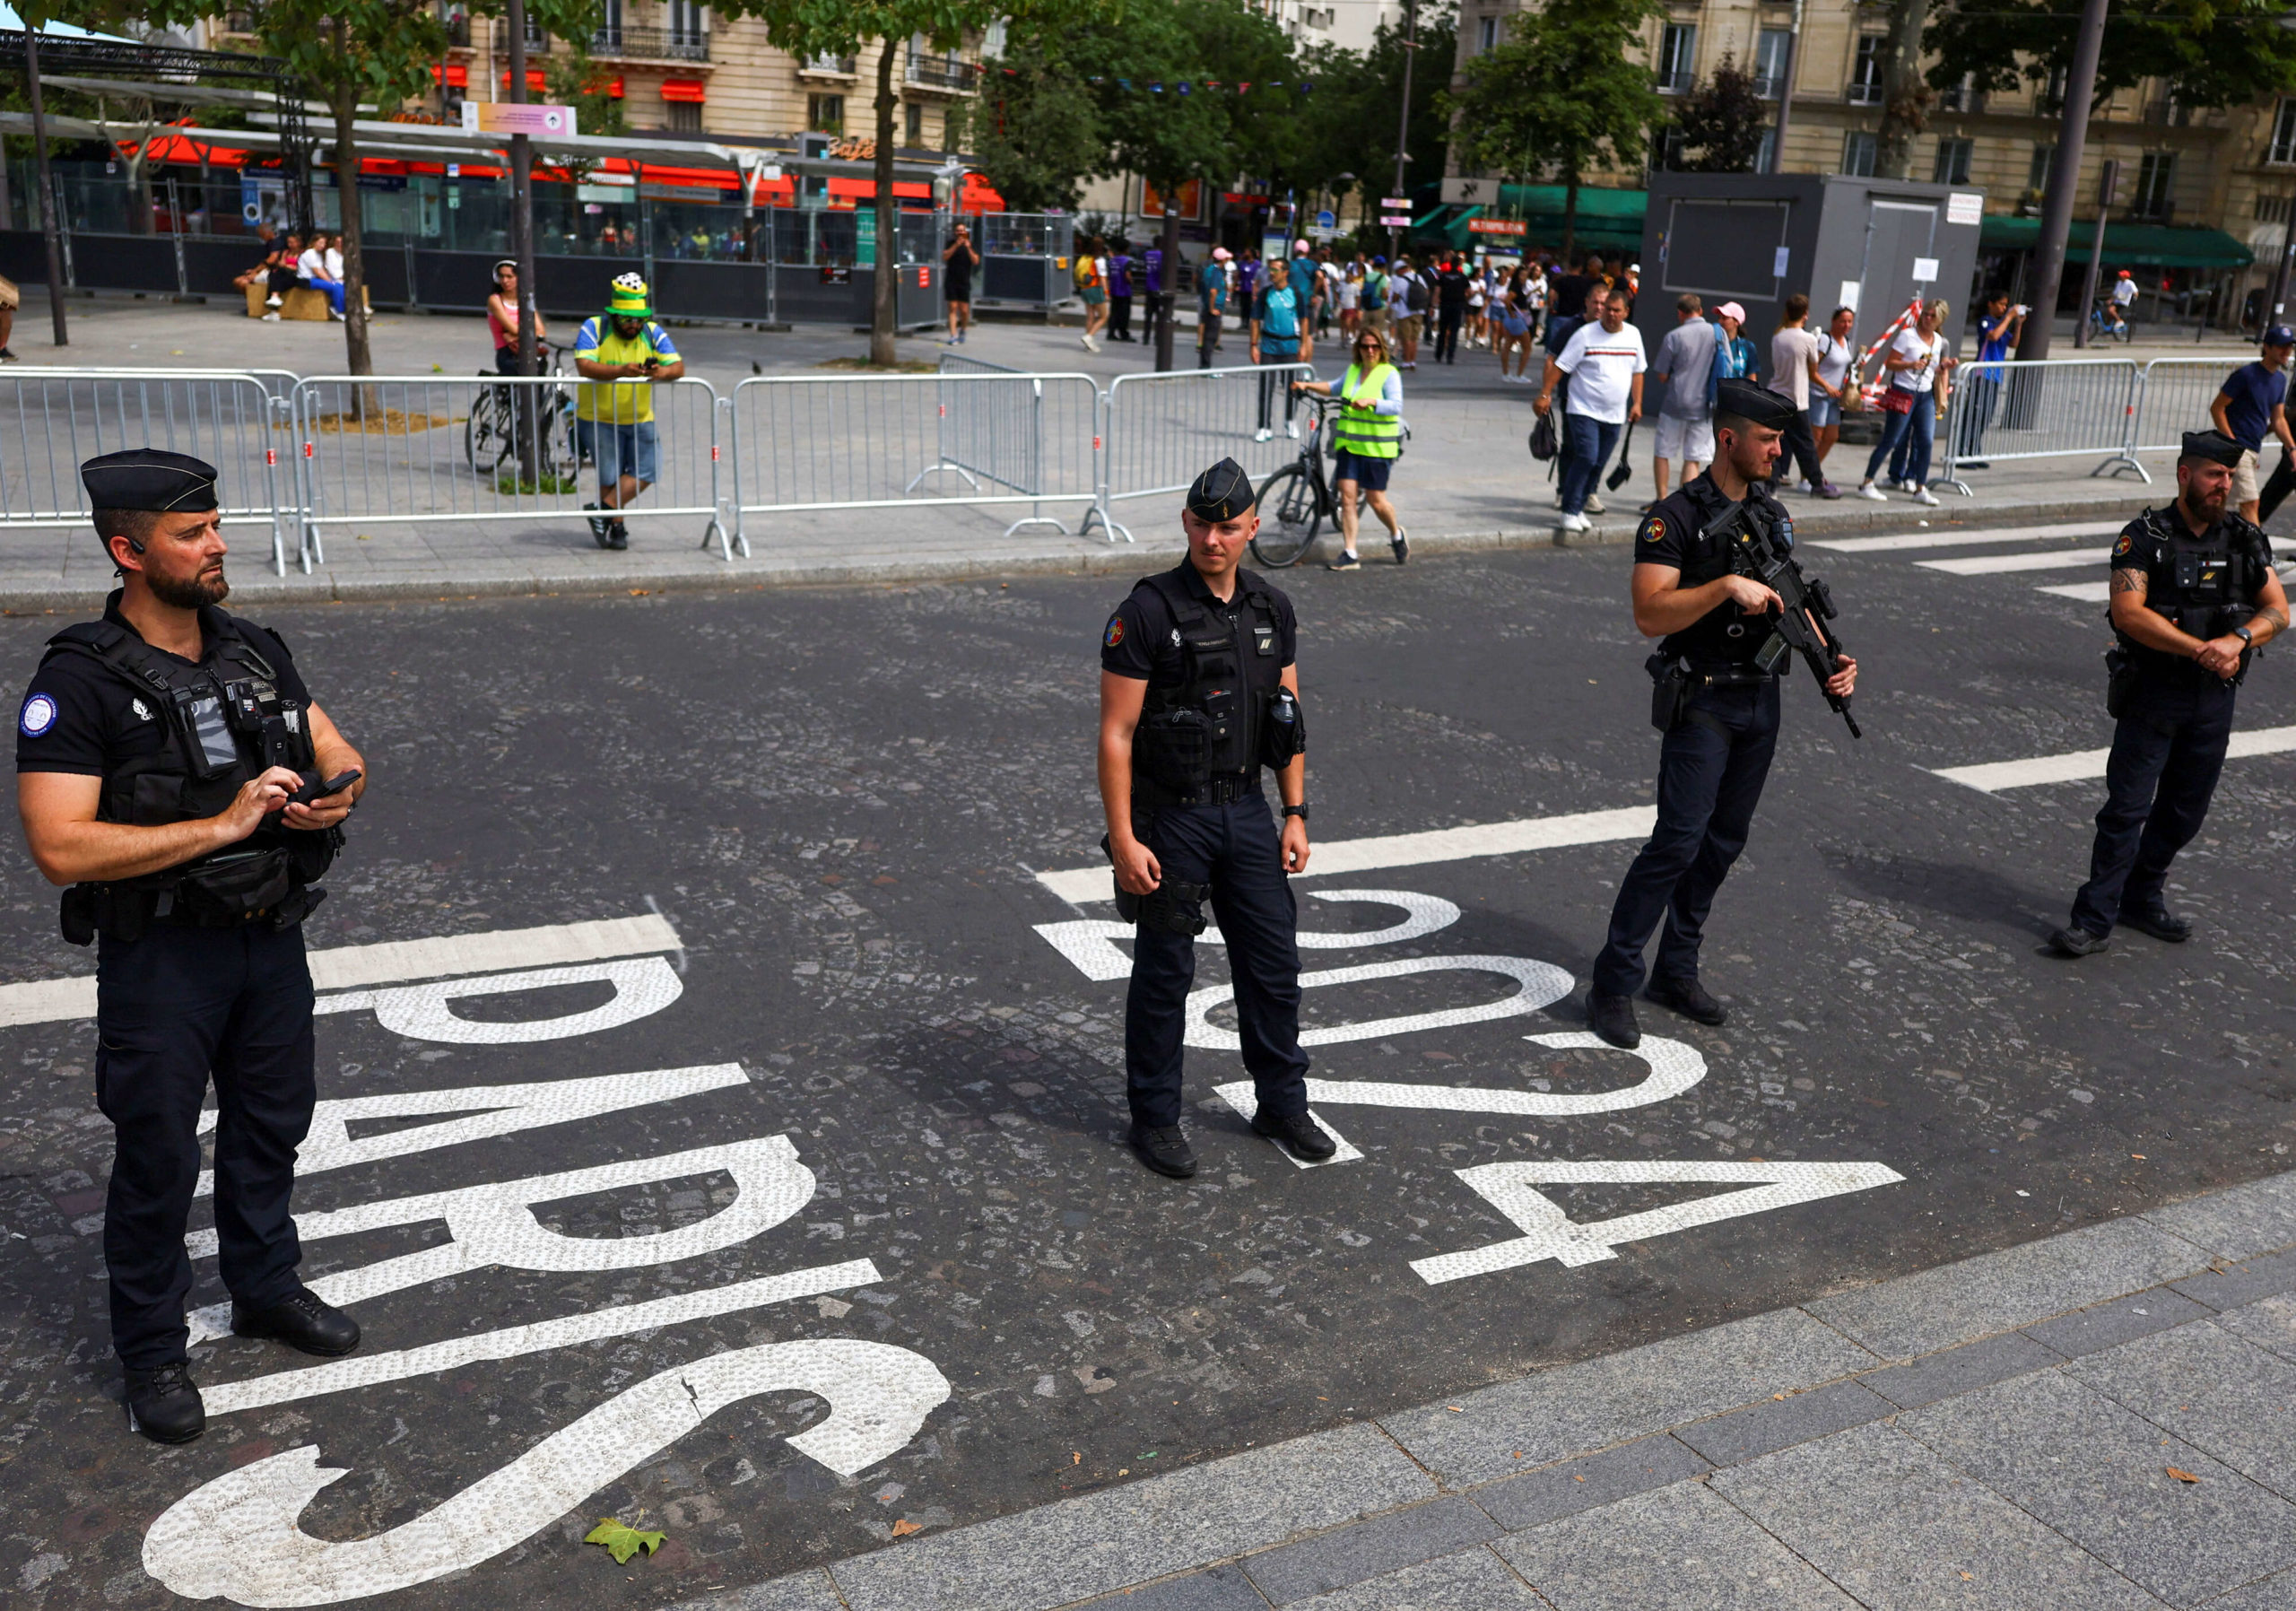 الشرطة بالمرصاد في ألعاب باريس الأولمبية